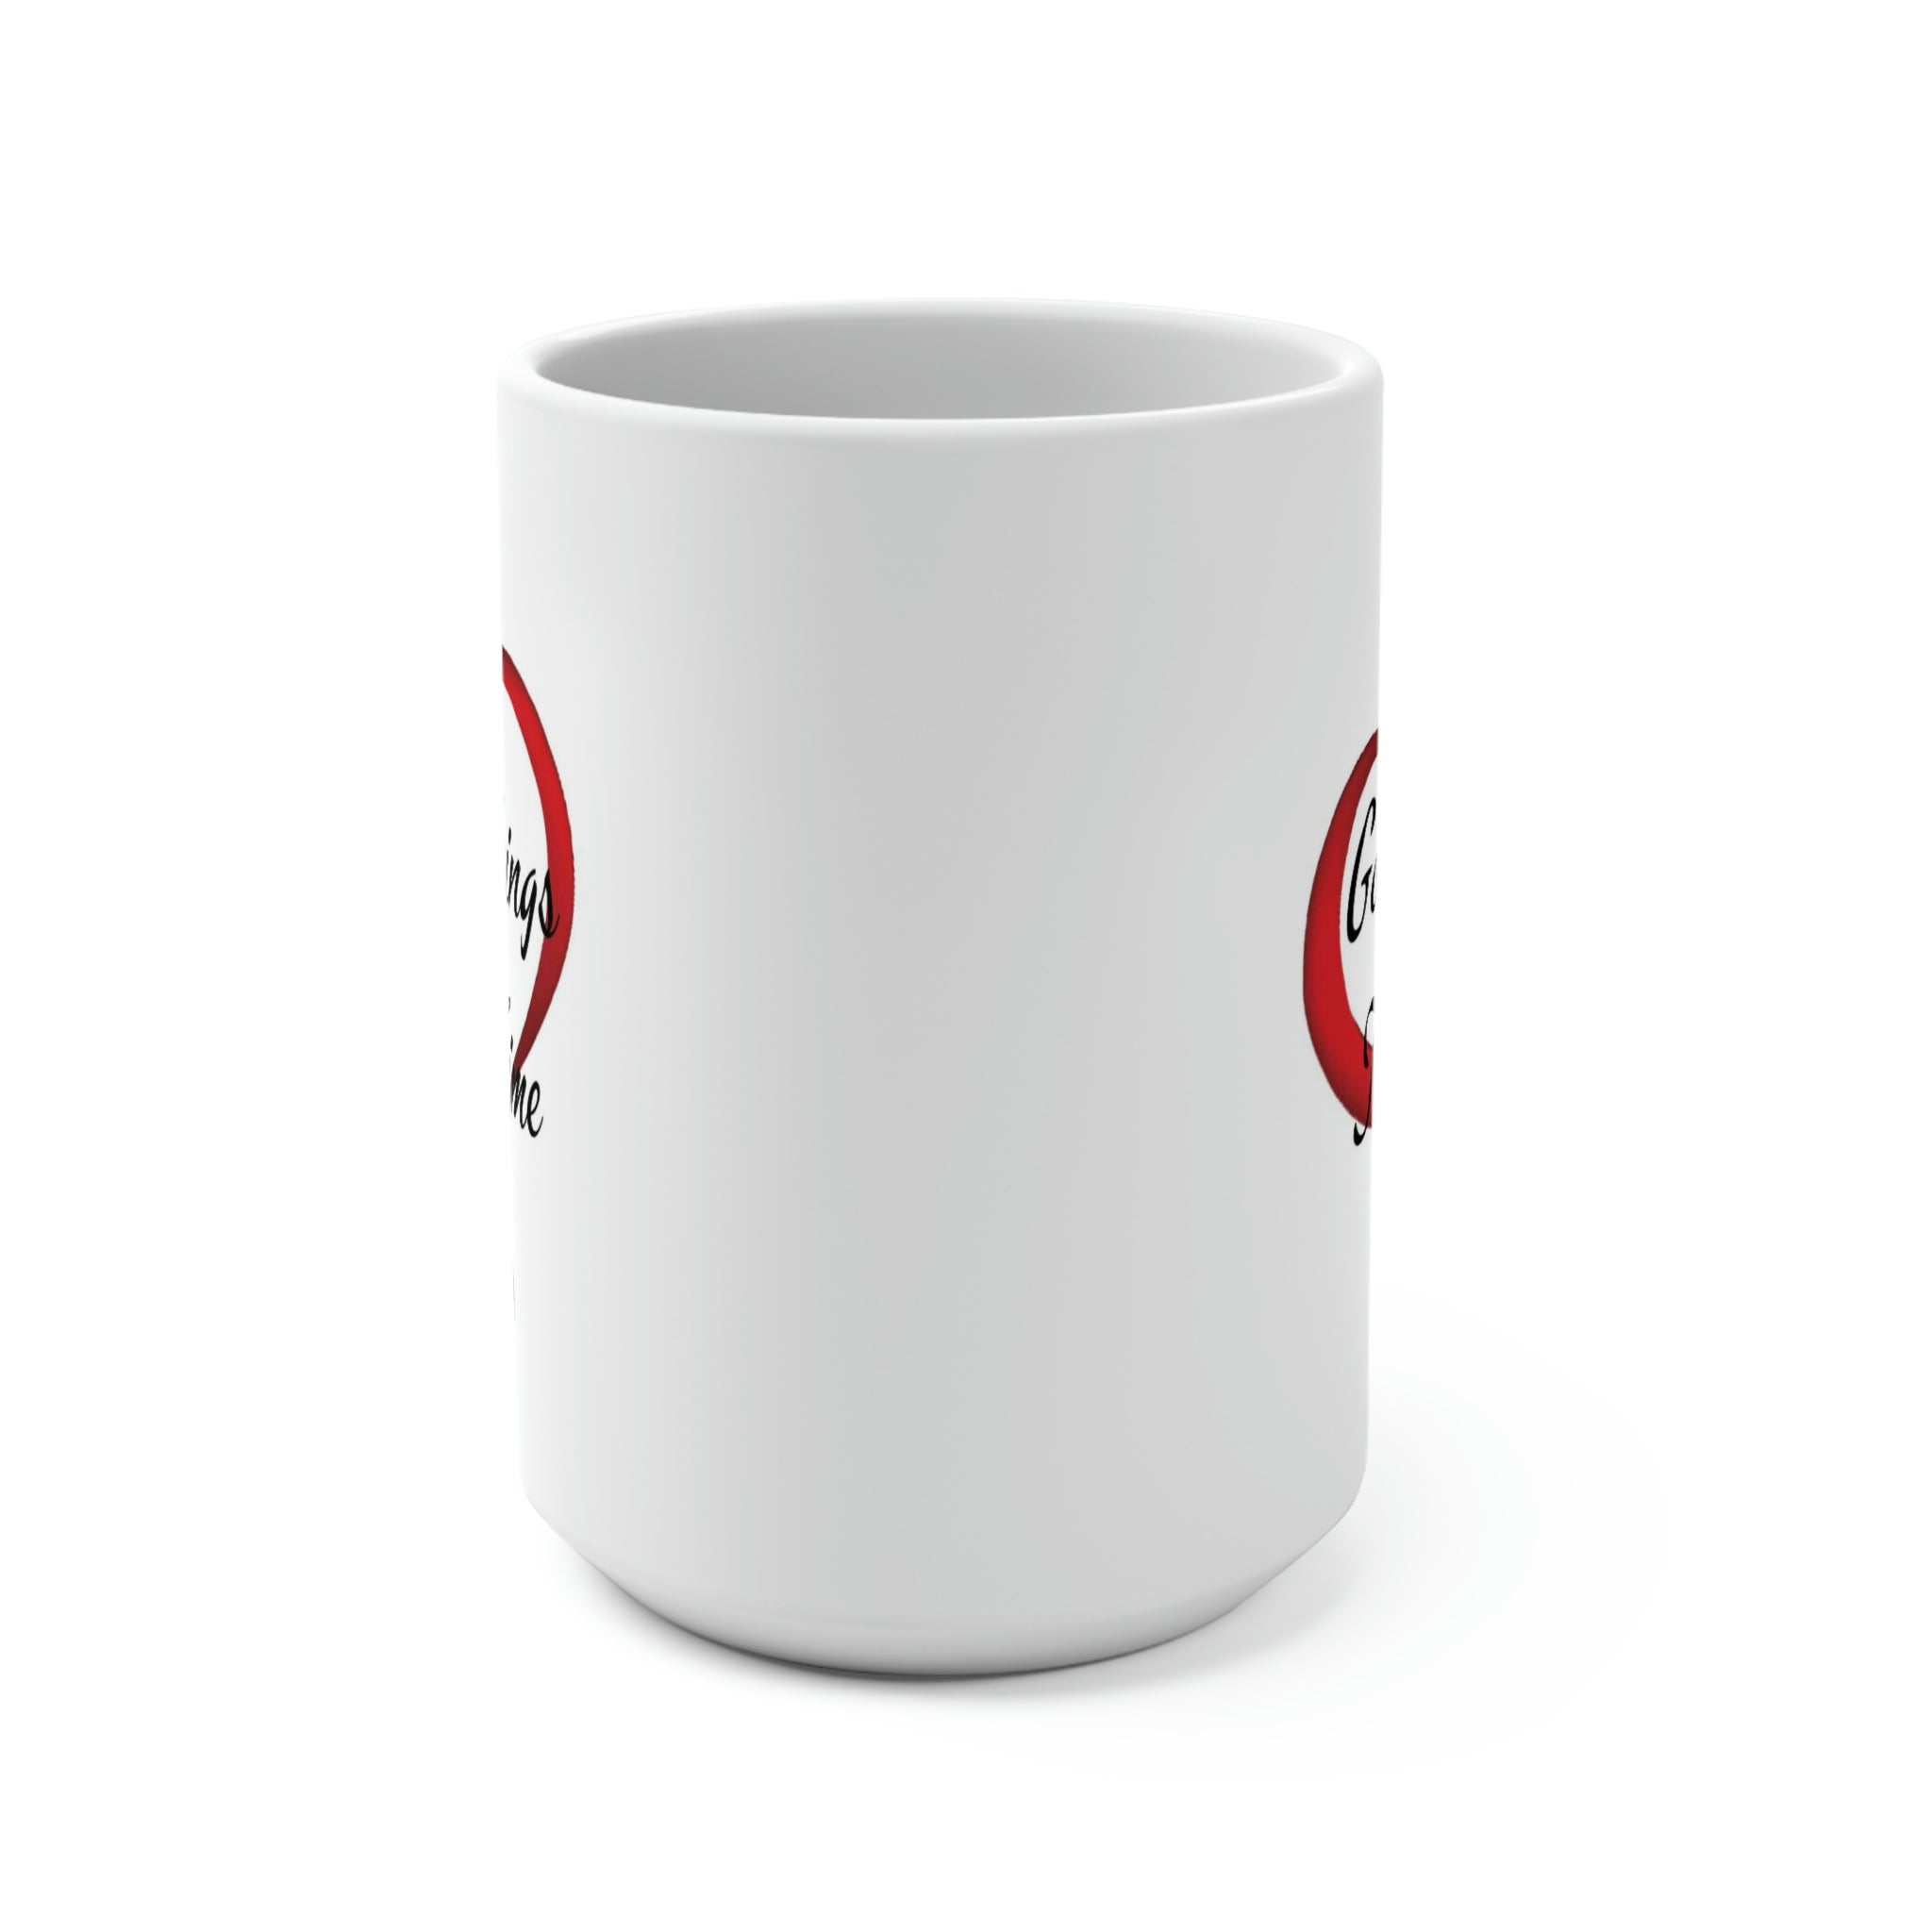 GOOD THINGS TAKE TIME - Ceramic Coffee Mug - 15oz